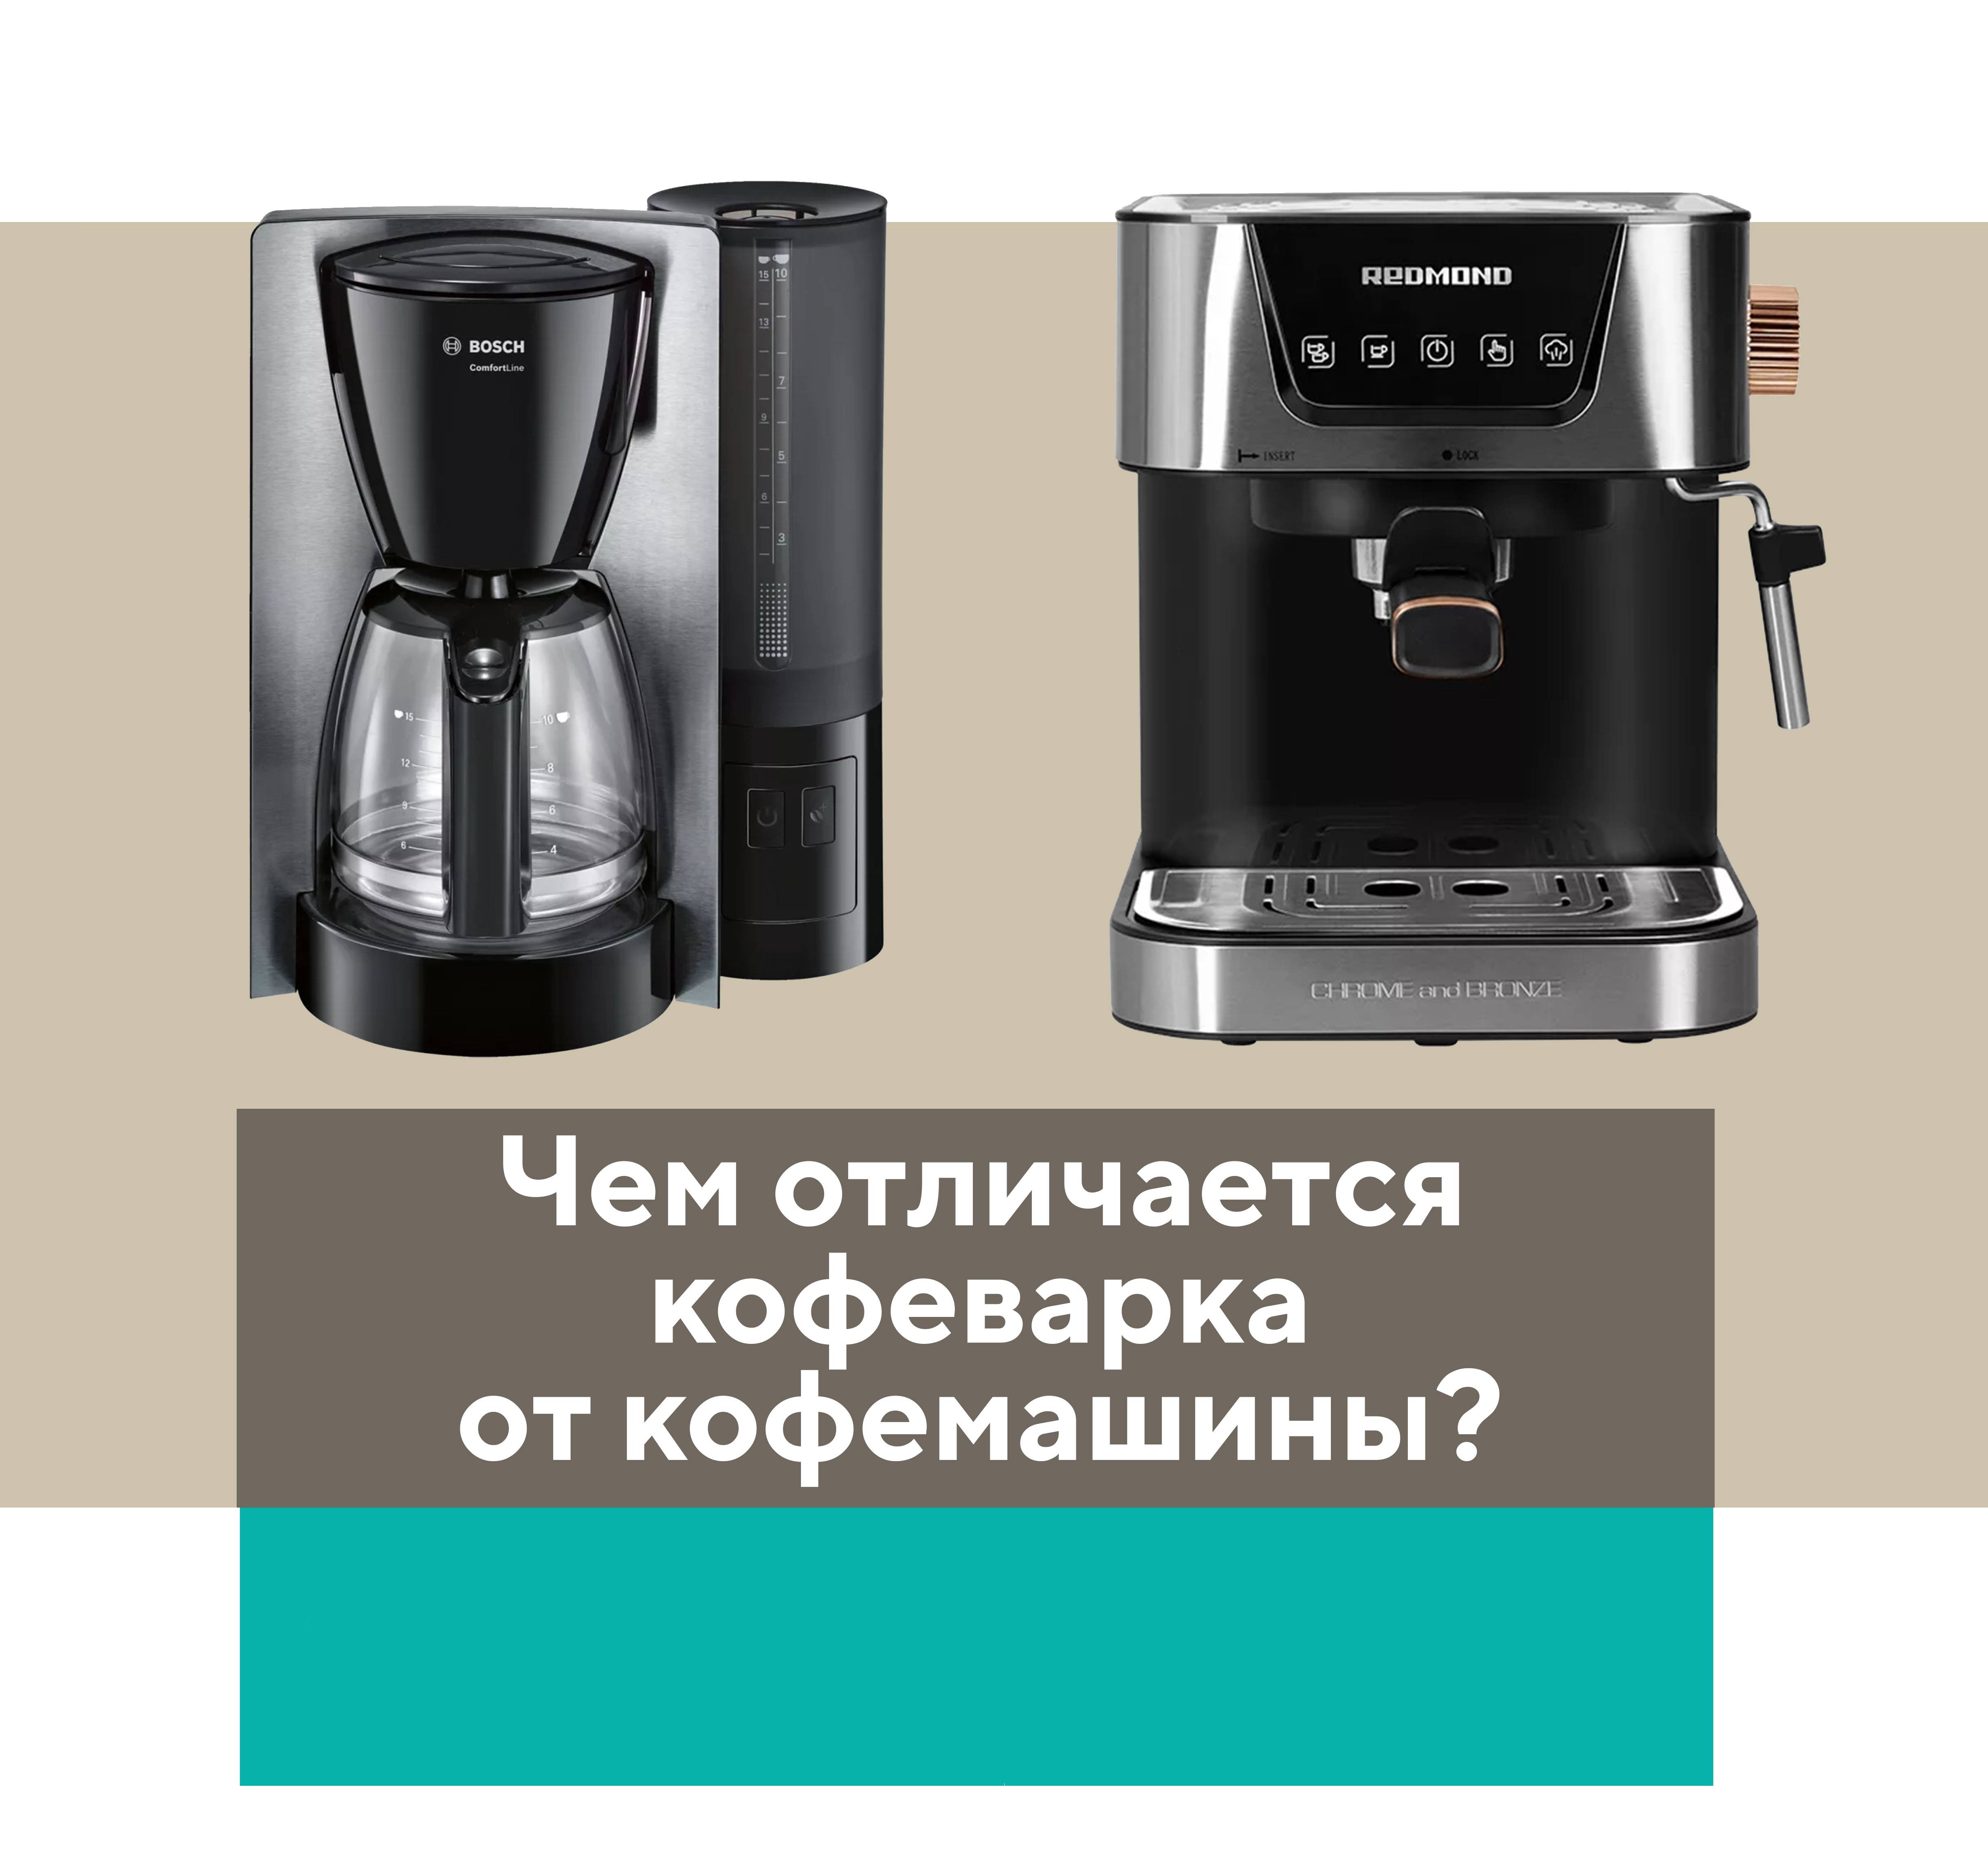 Кофеварка или кофемашина: в чём разница и что выбрать?